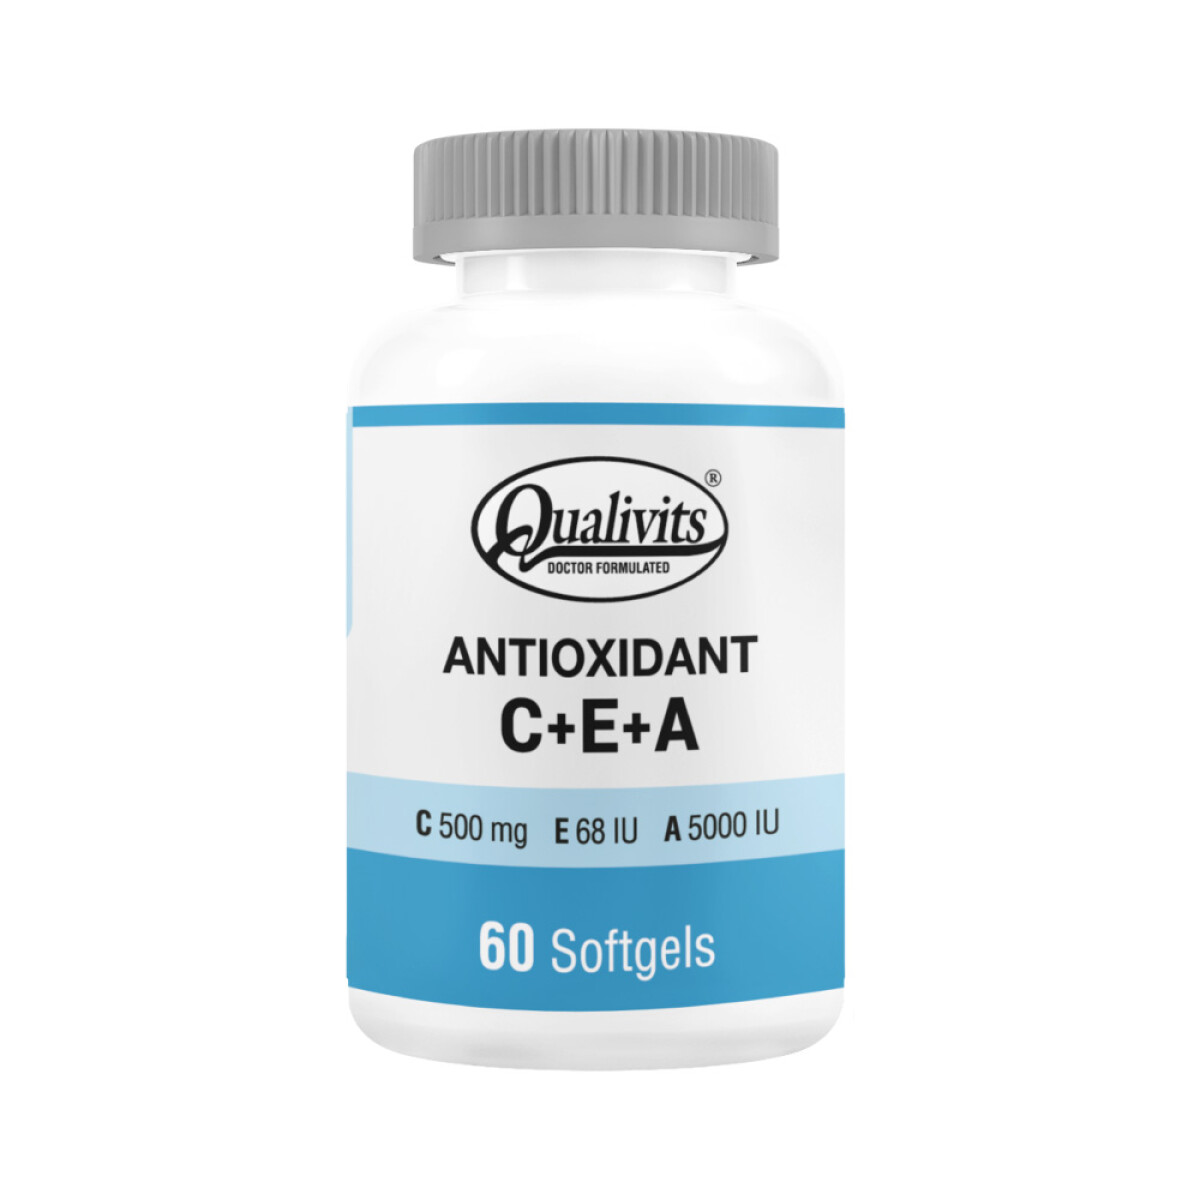 ANTIOXIDANT C+E+A QUALIVITS x 60 Softgels 